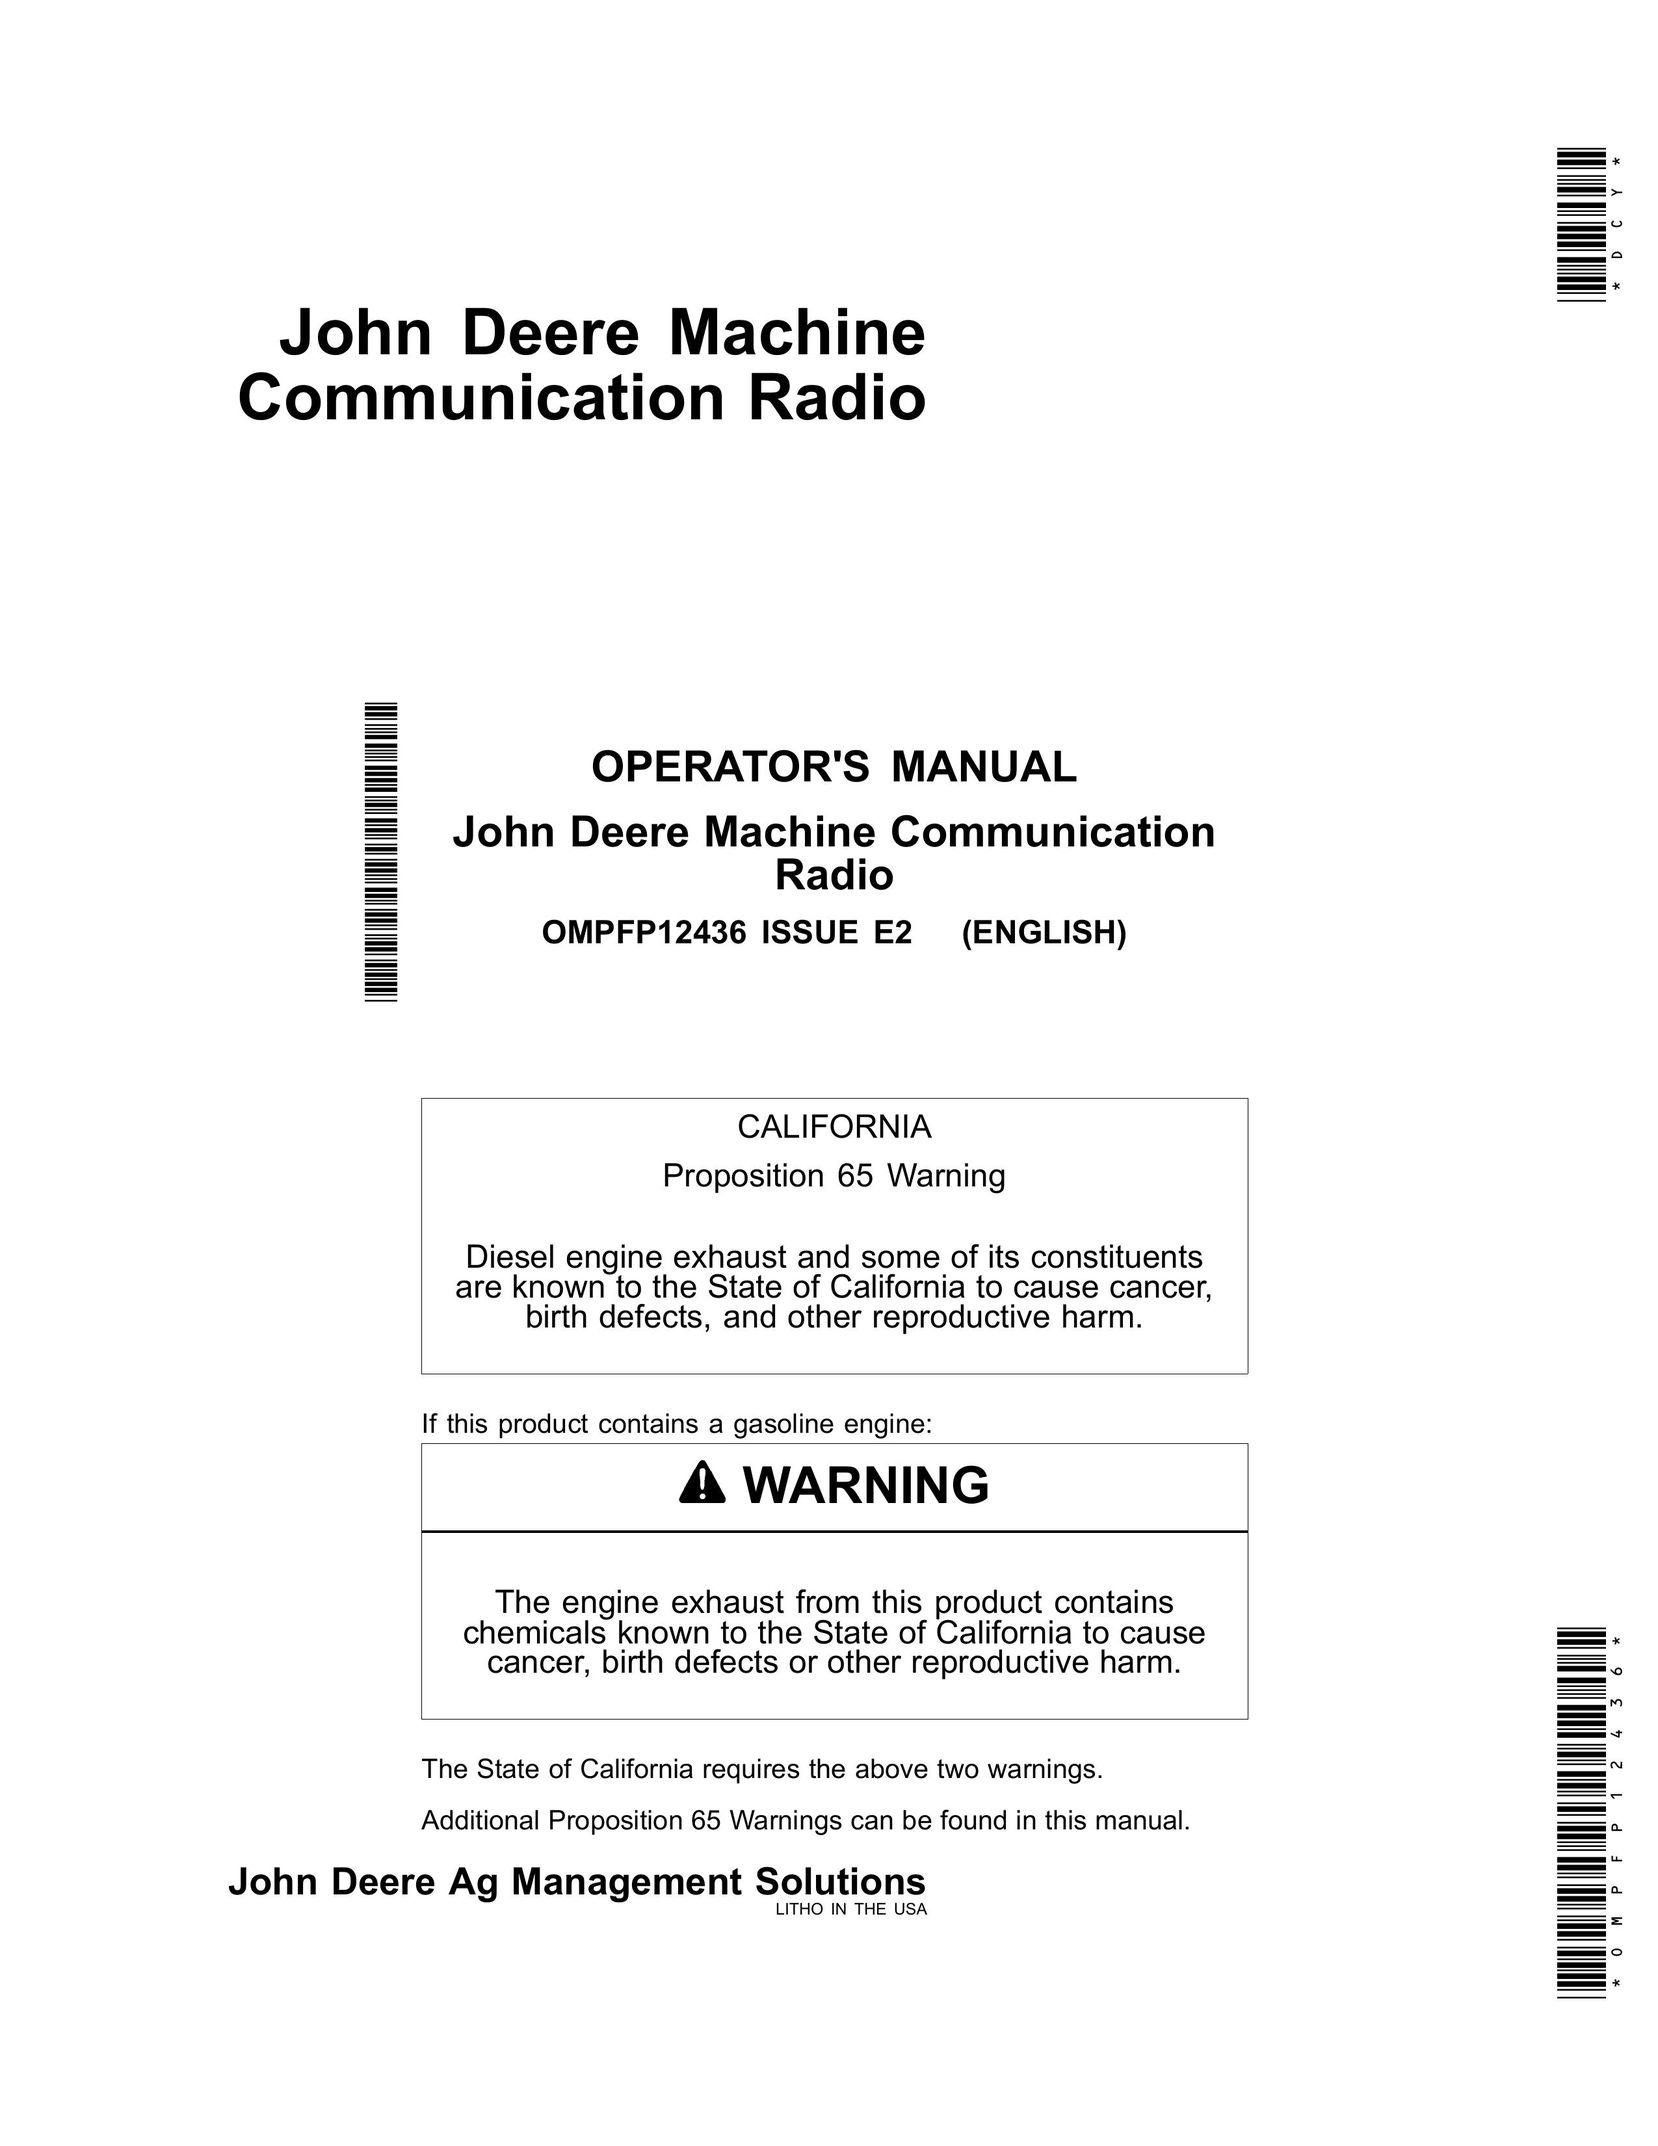 John Deere OMPFP12436 Radio User Manual